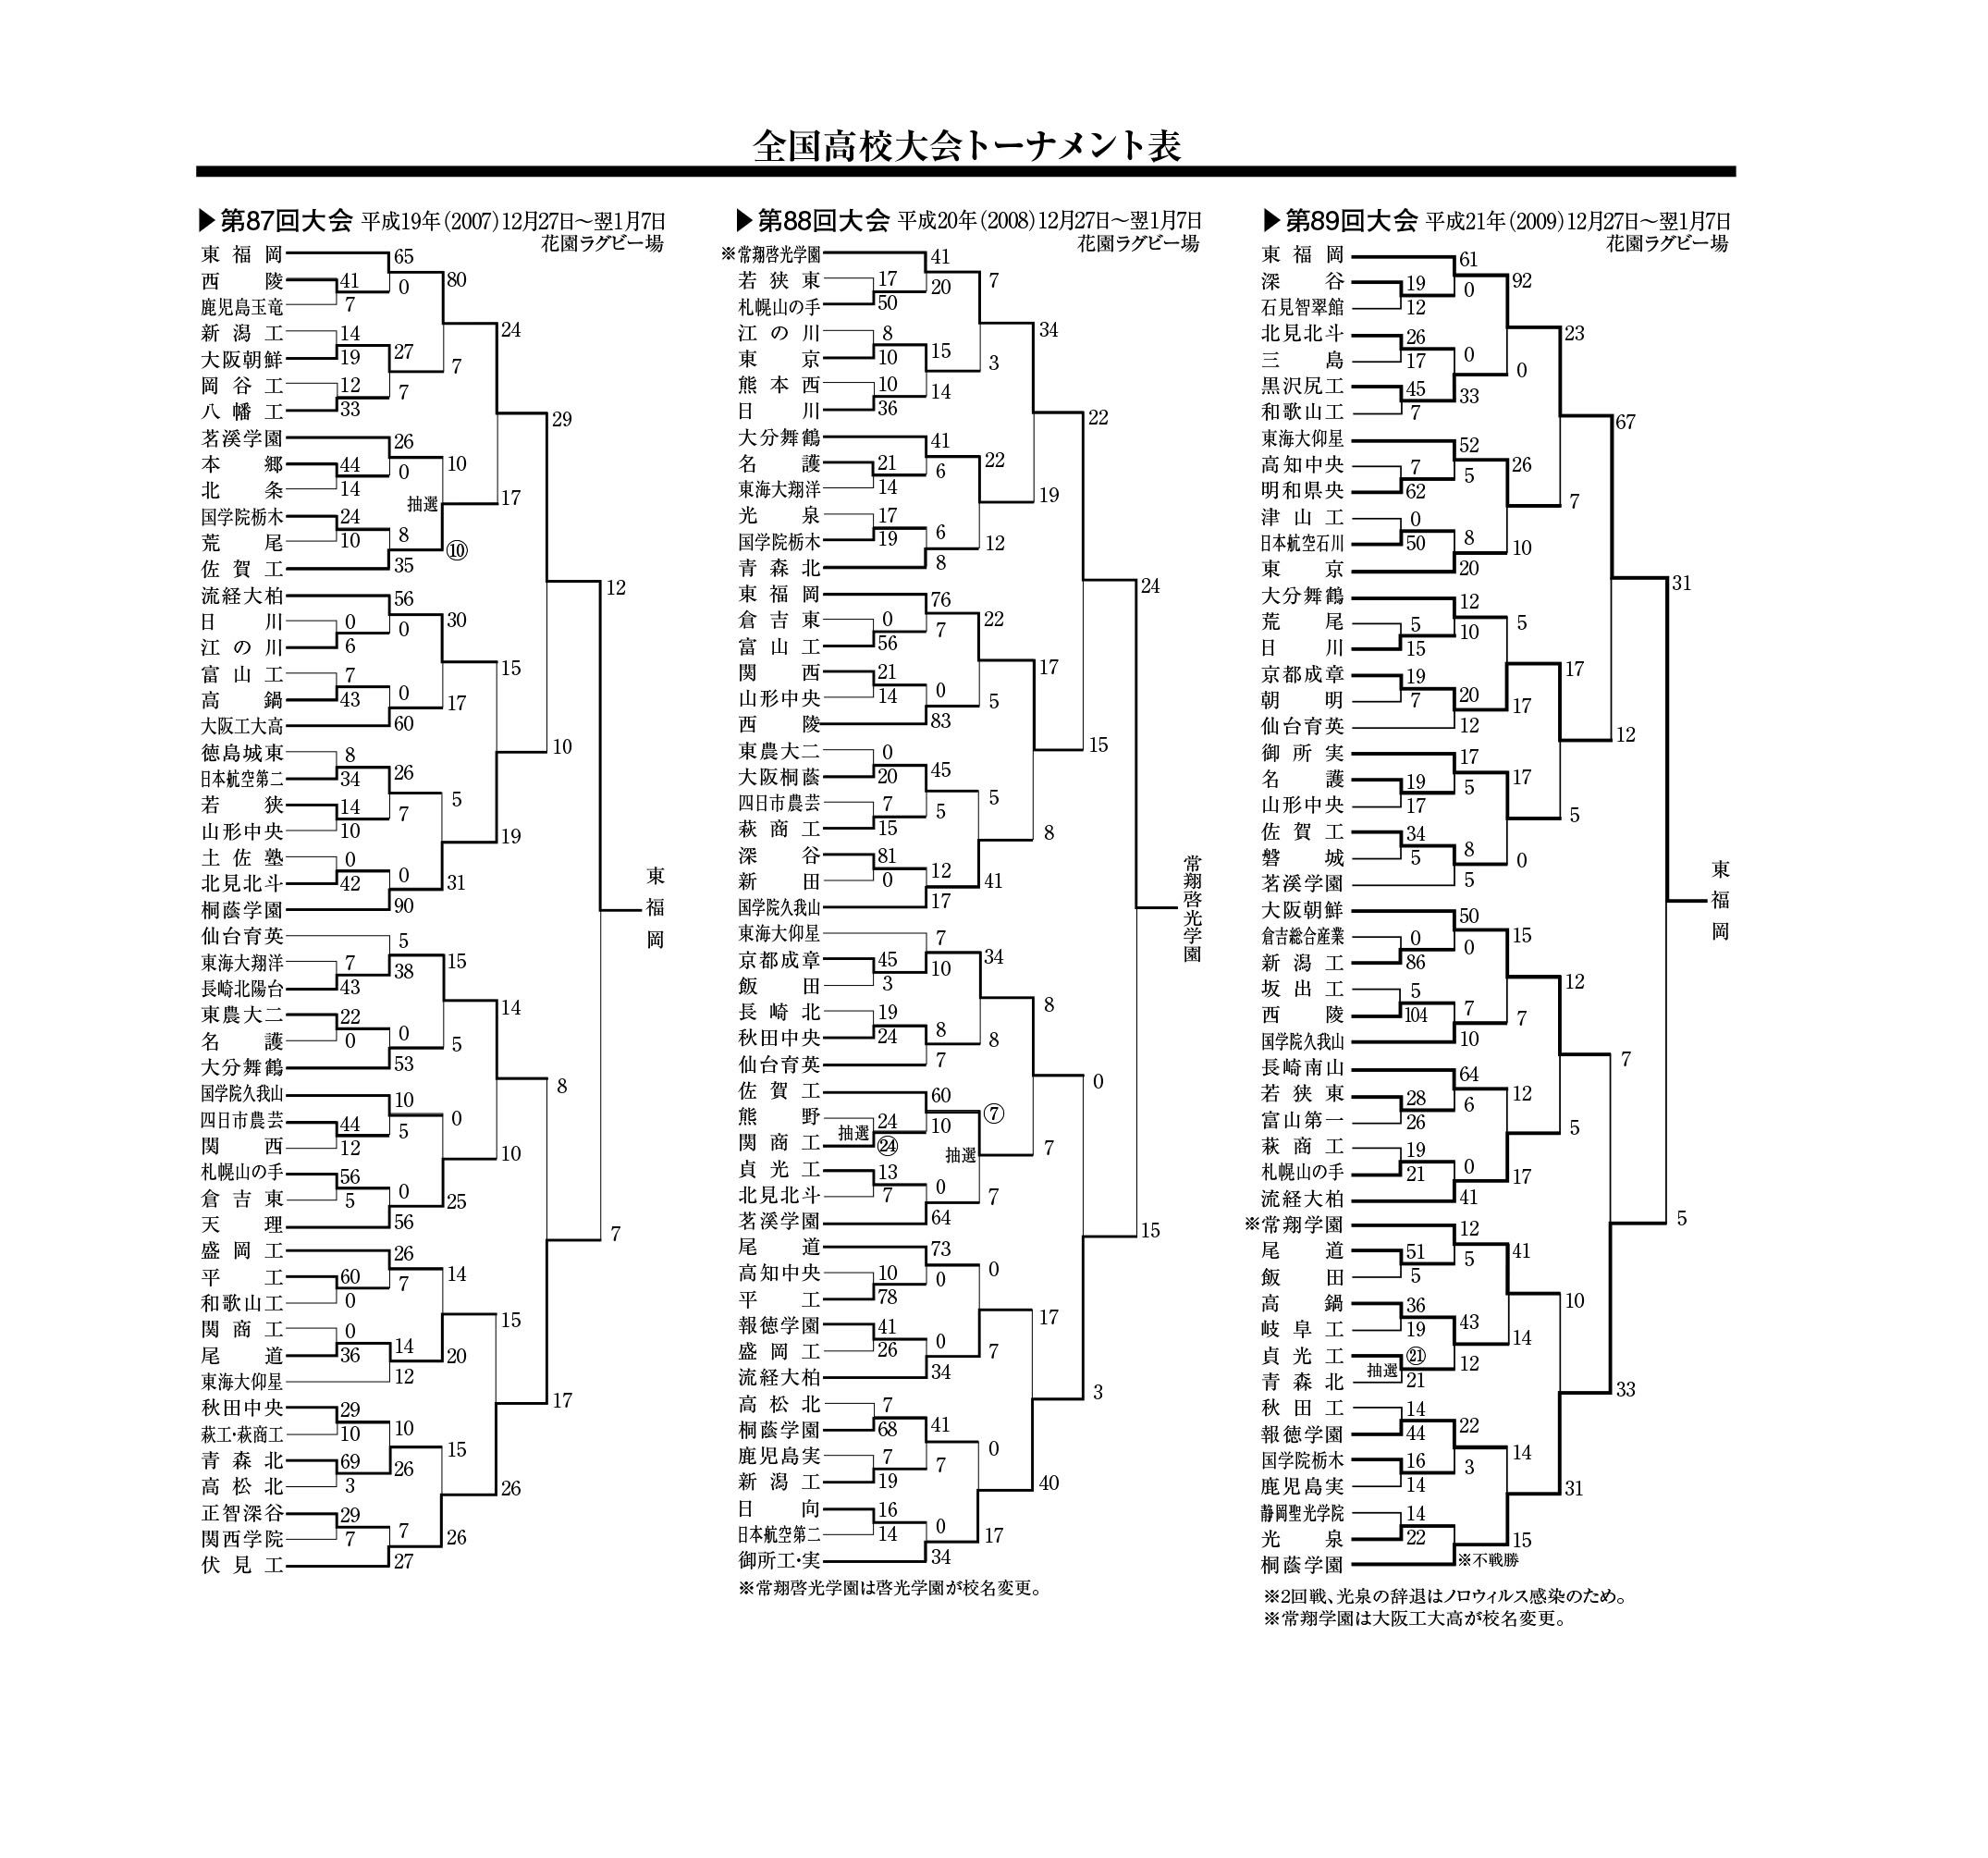 全国高校大会トーナメント表(第87回～89回)